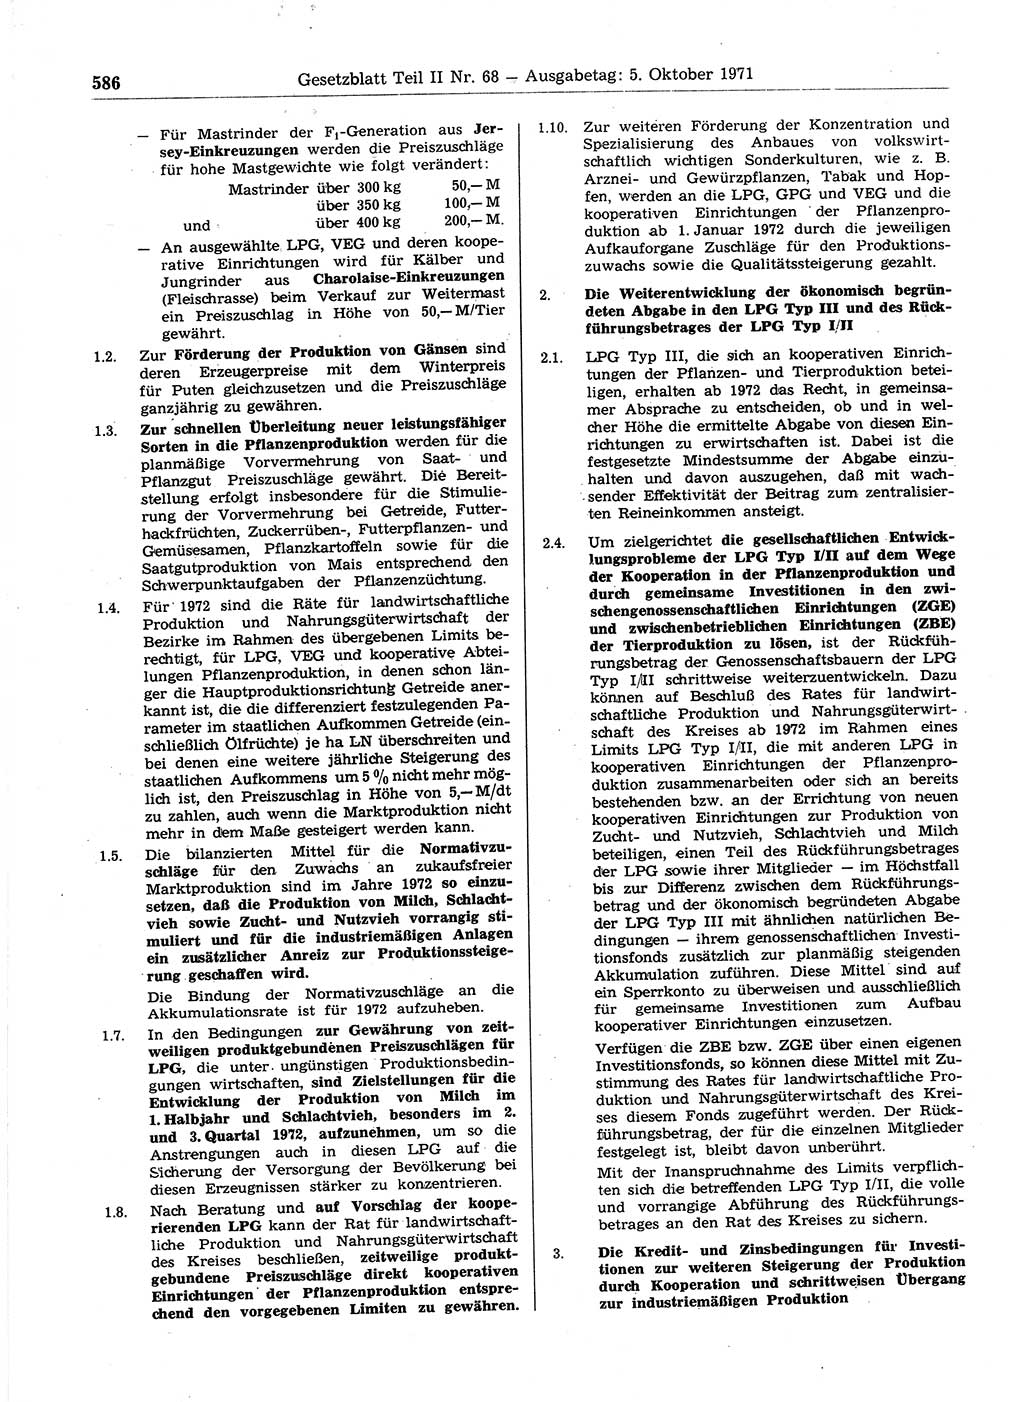 Gesetzblatt (GBl.) der Deutschen Demokratischen Republik (DDR) Teil ⅠⅠ 1971, Seite 586 (GBl. DDR ⅠⅠ 1971, S. 586)